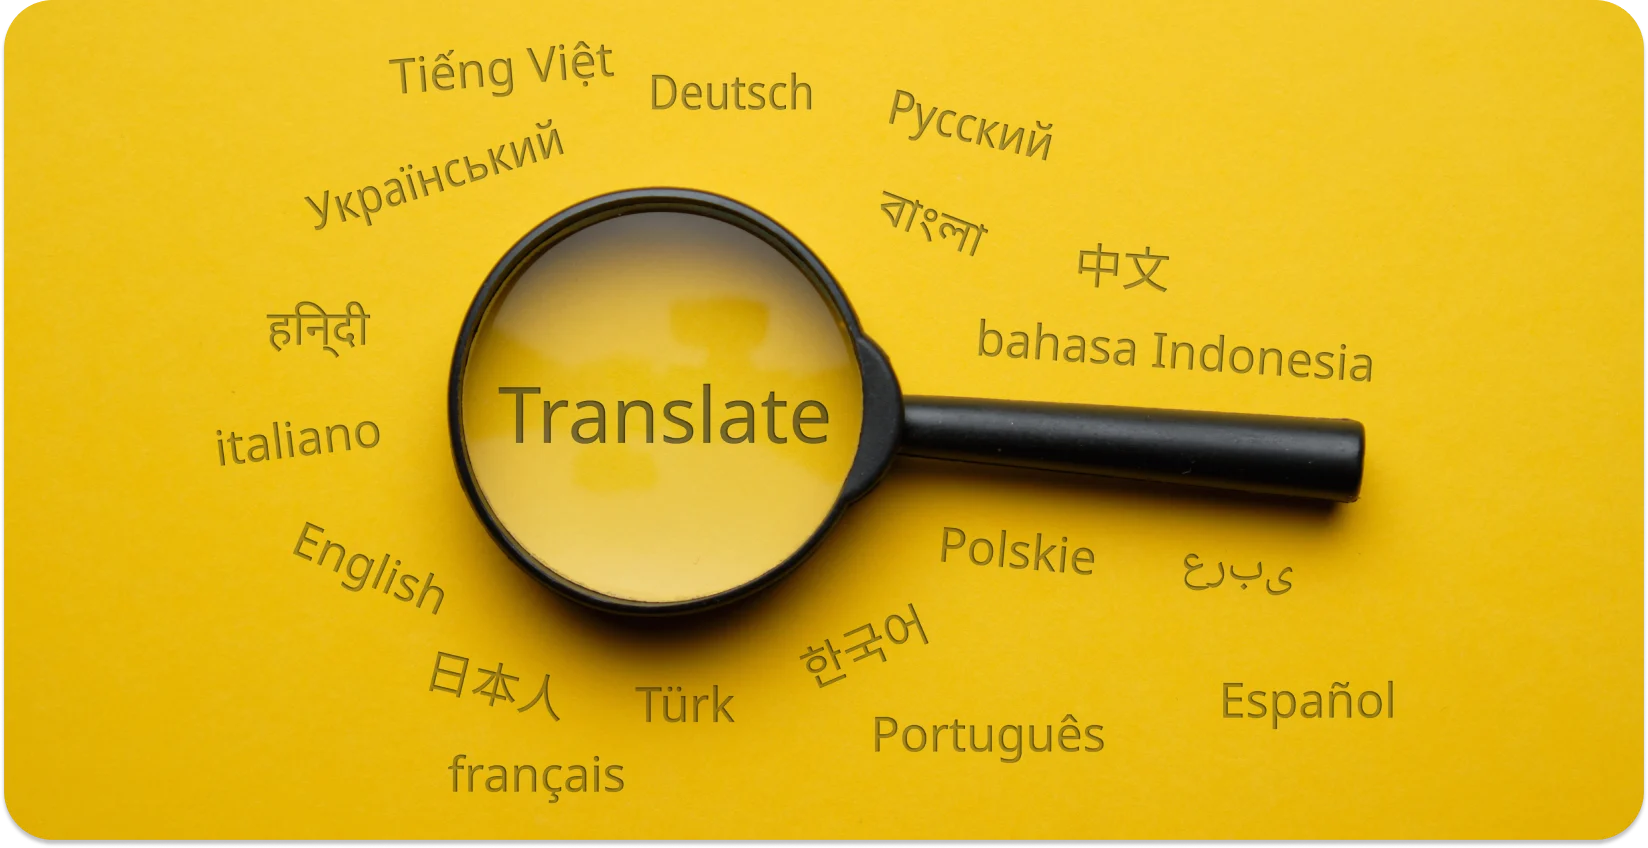 Lupa destacando "Traduzir" em meio a várias línguas, simbolizando a conversão linguística.